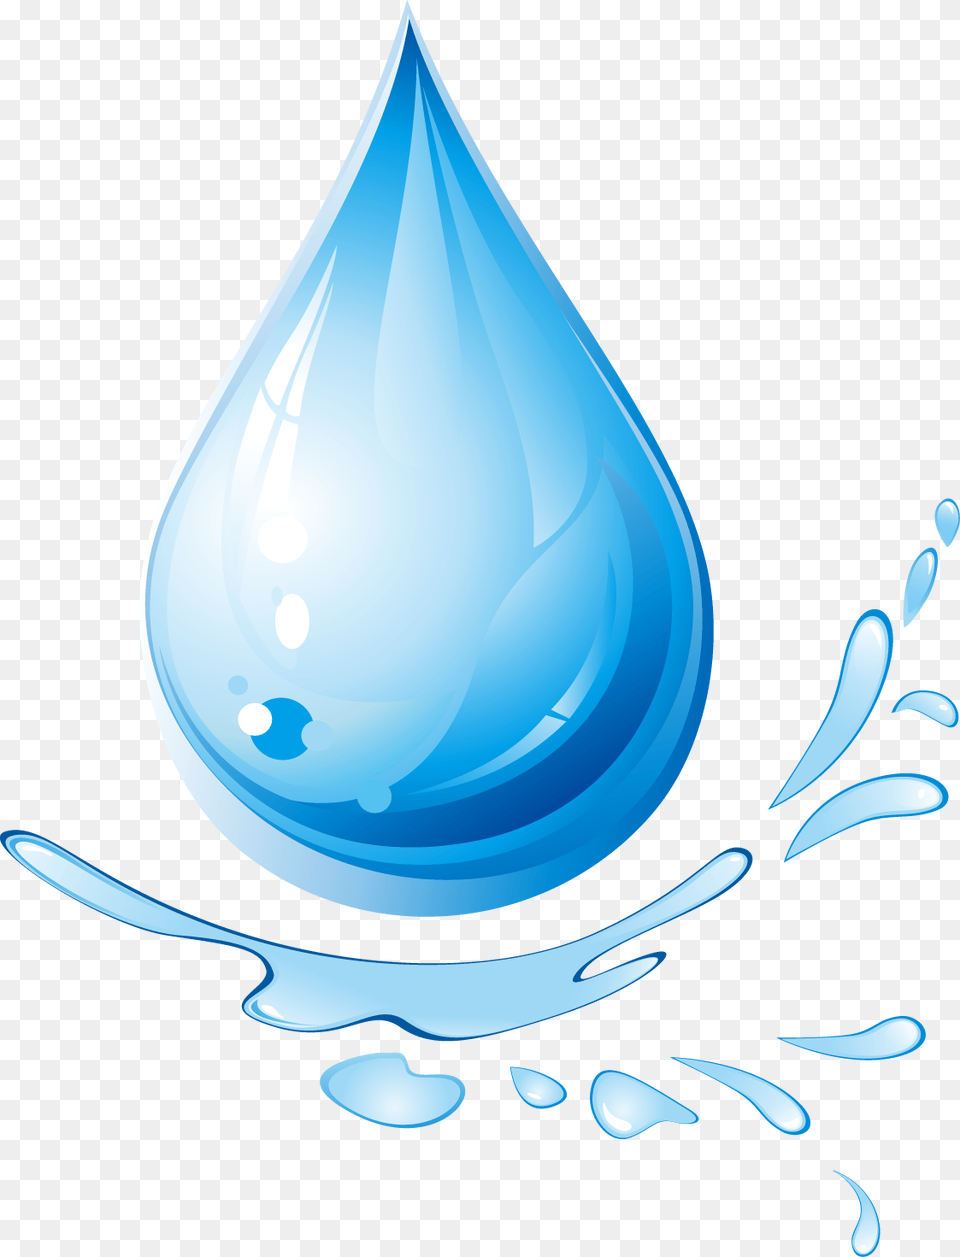 Fine Water Droplets Gota De Agua, Droplet, Art, Graphics Png